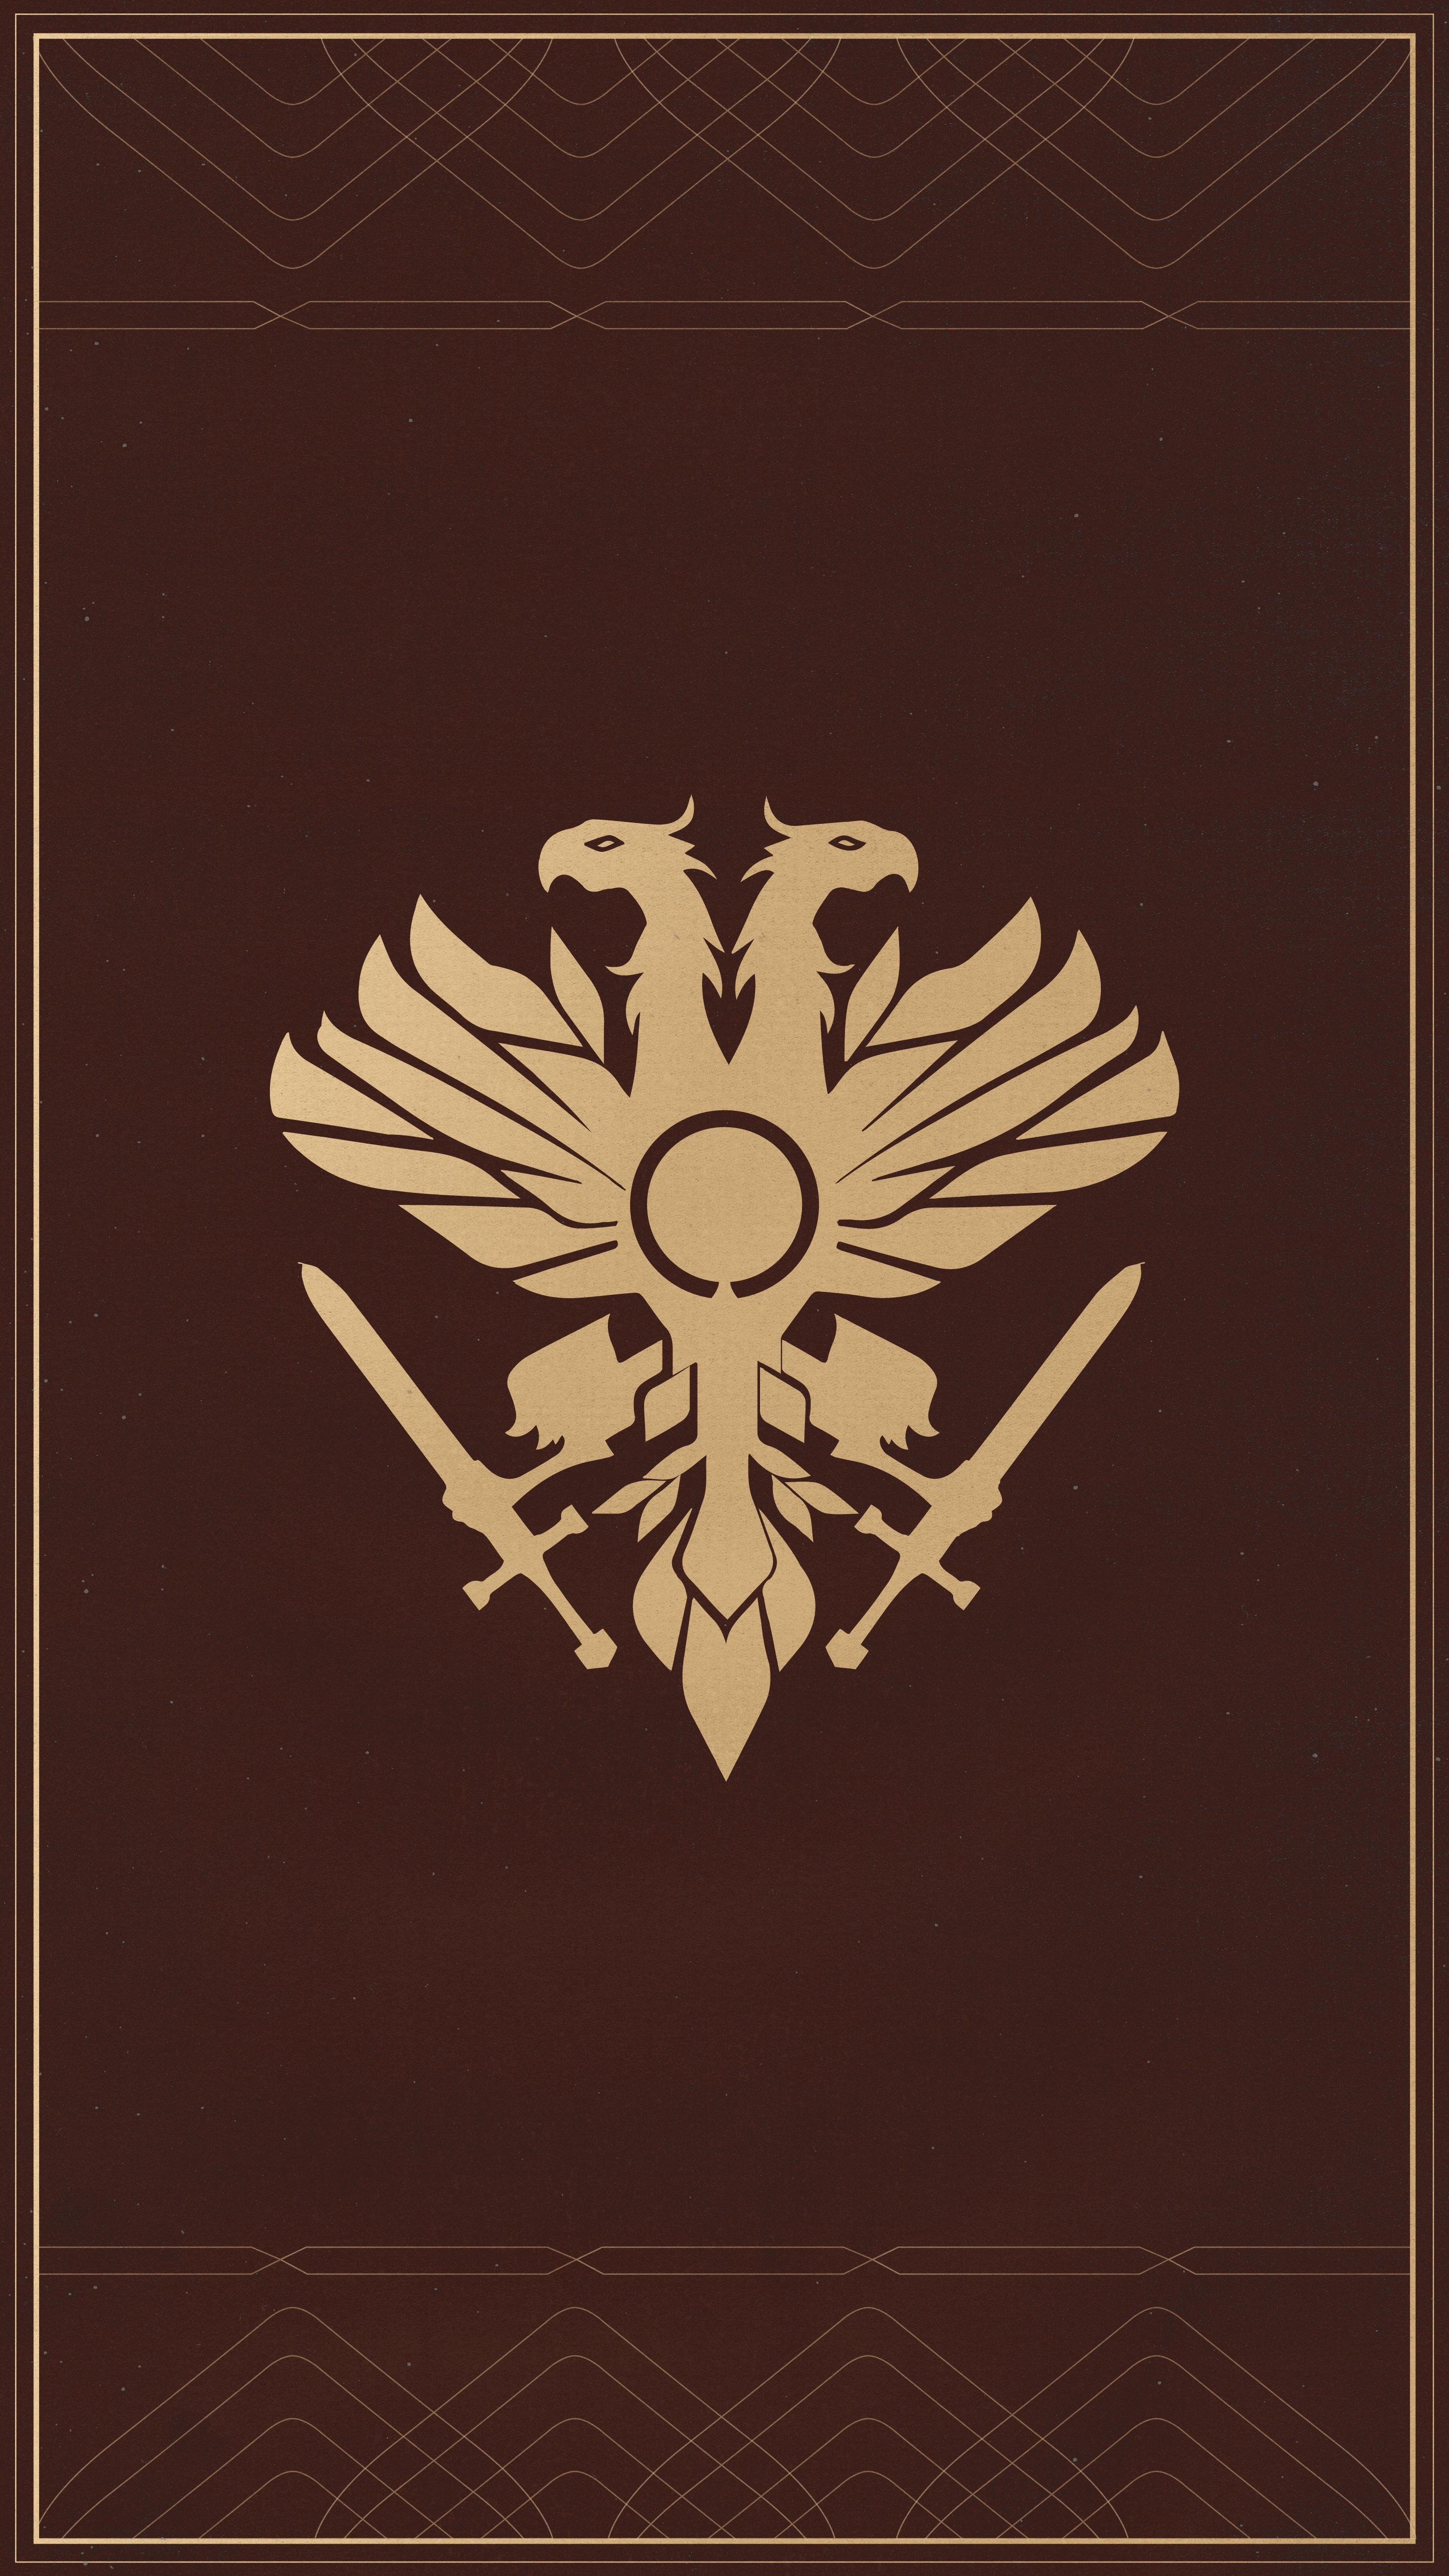 Destiny 2 iPhone Emblem HD Wallpaper 2020